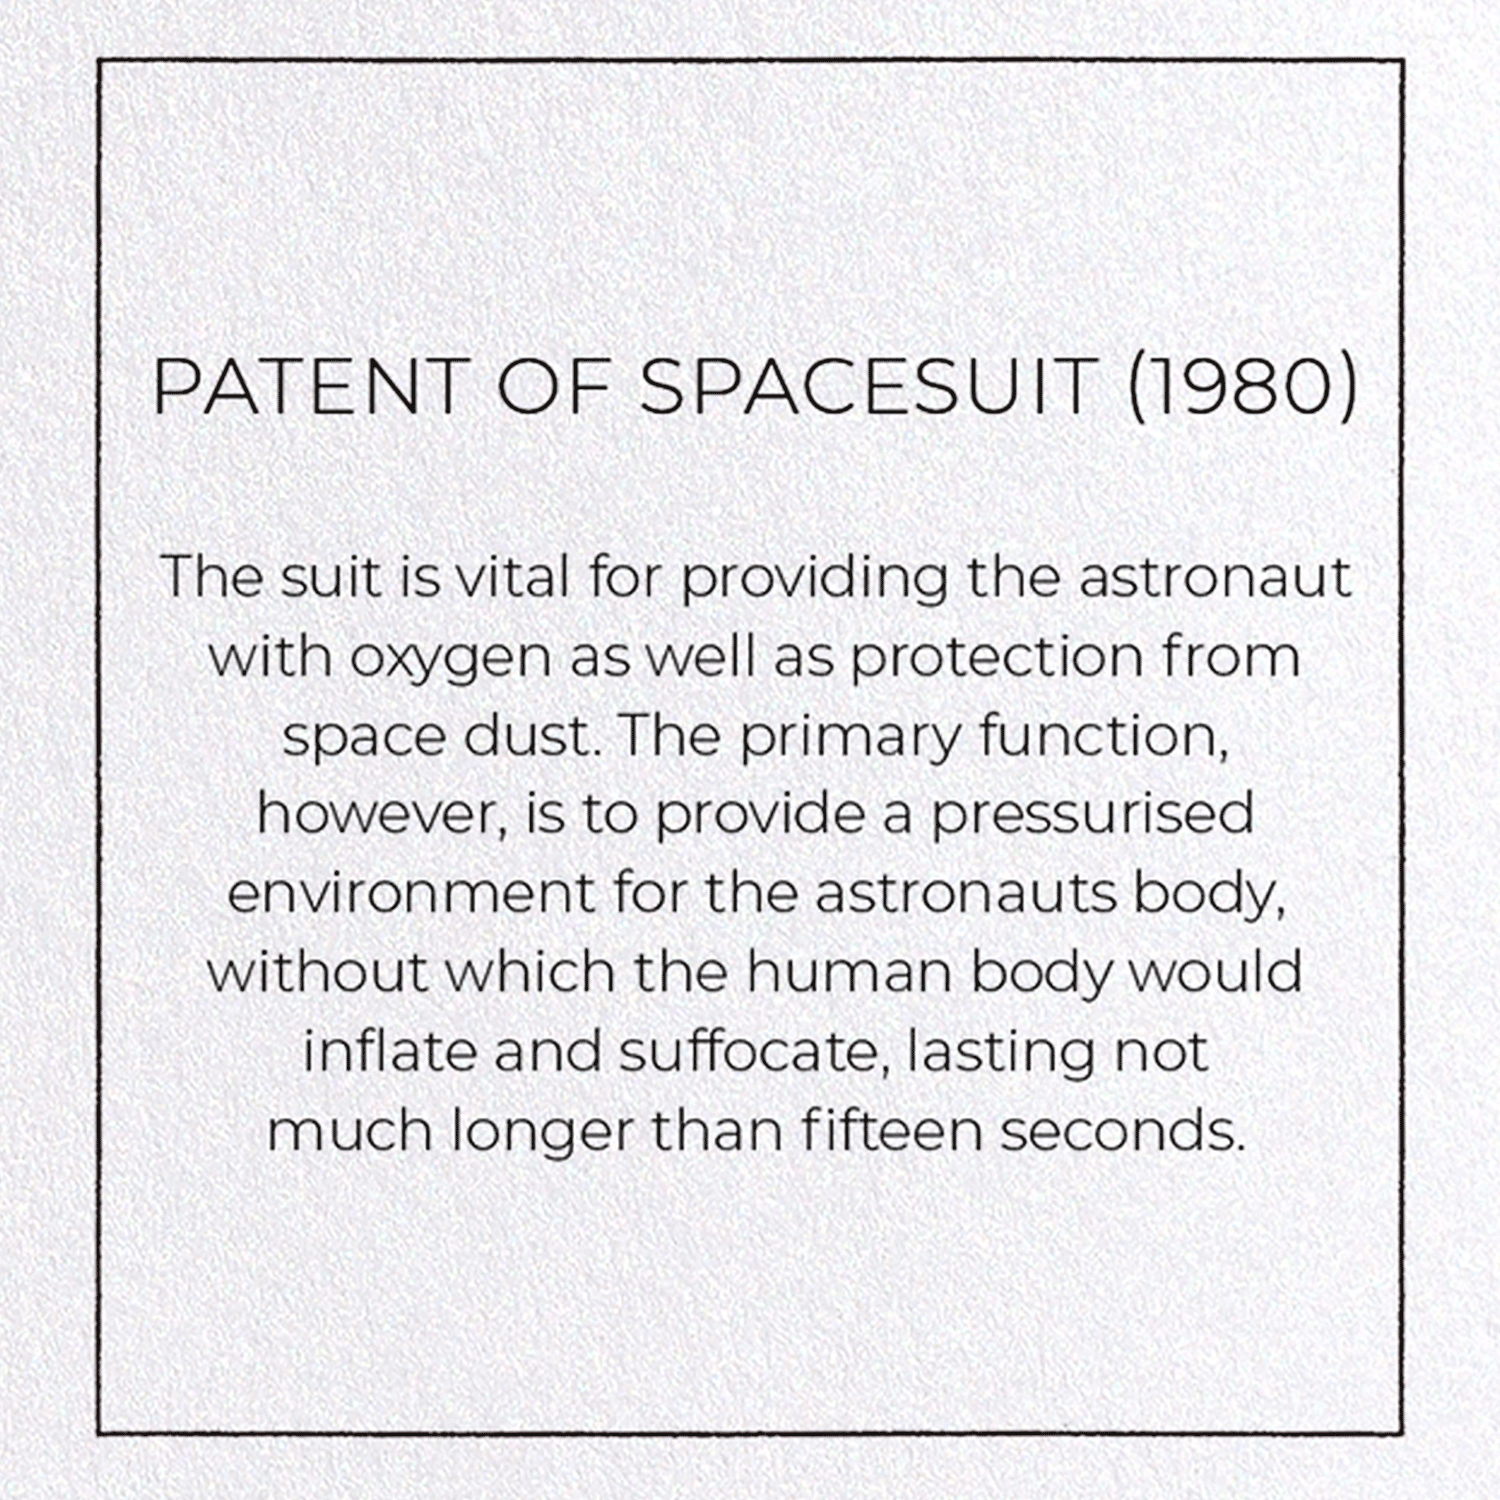 PATENT OF SPACESUIT (1980)